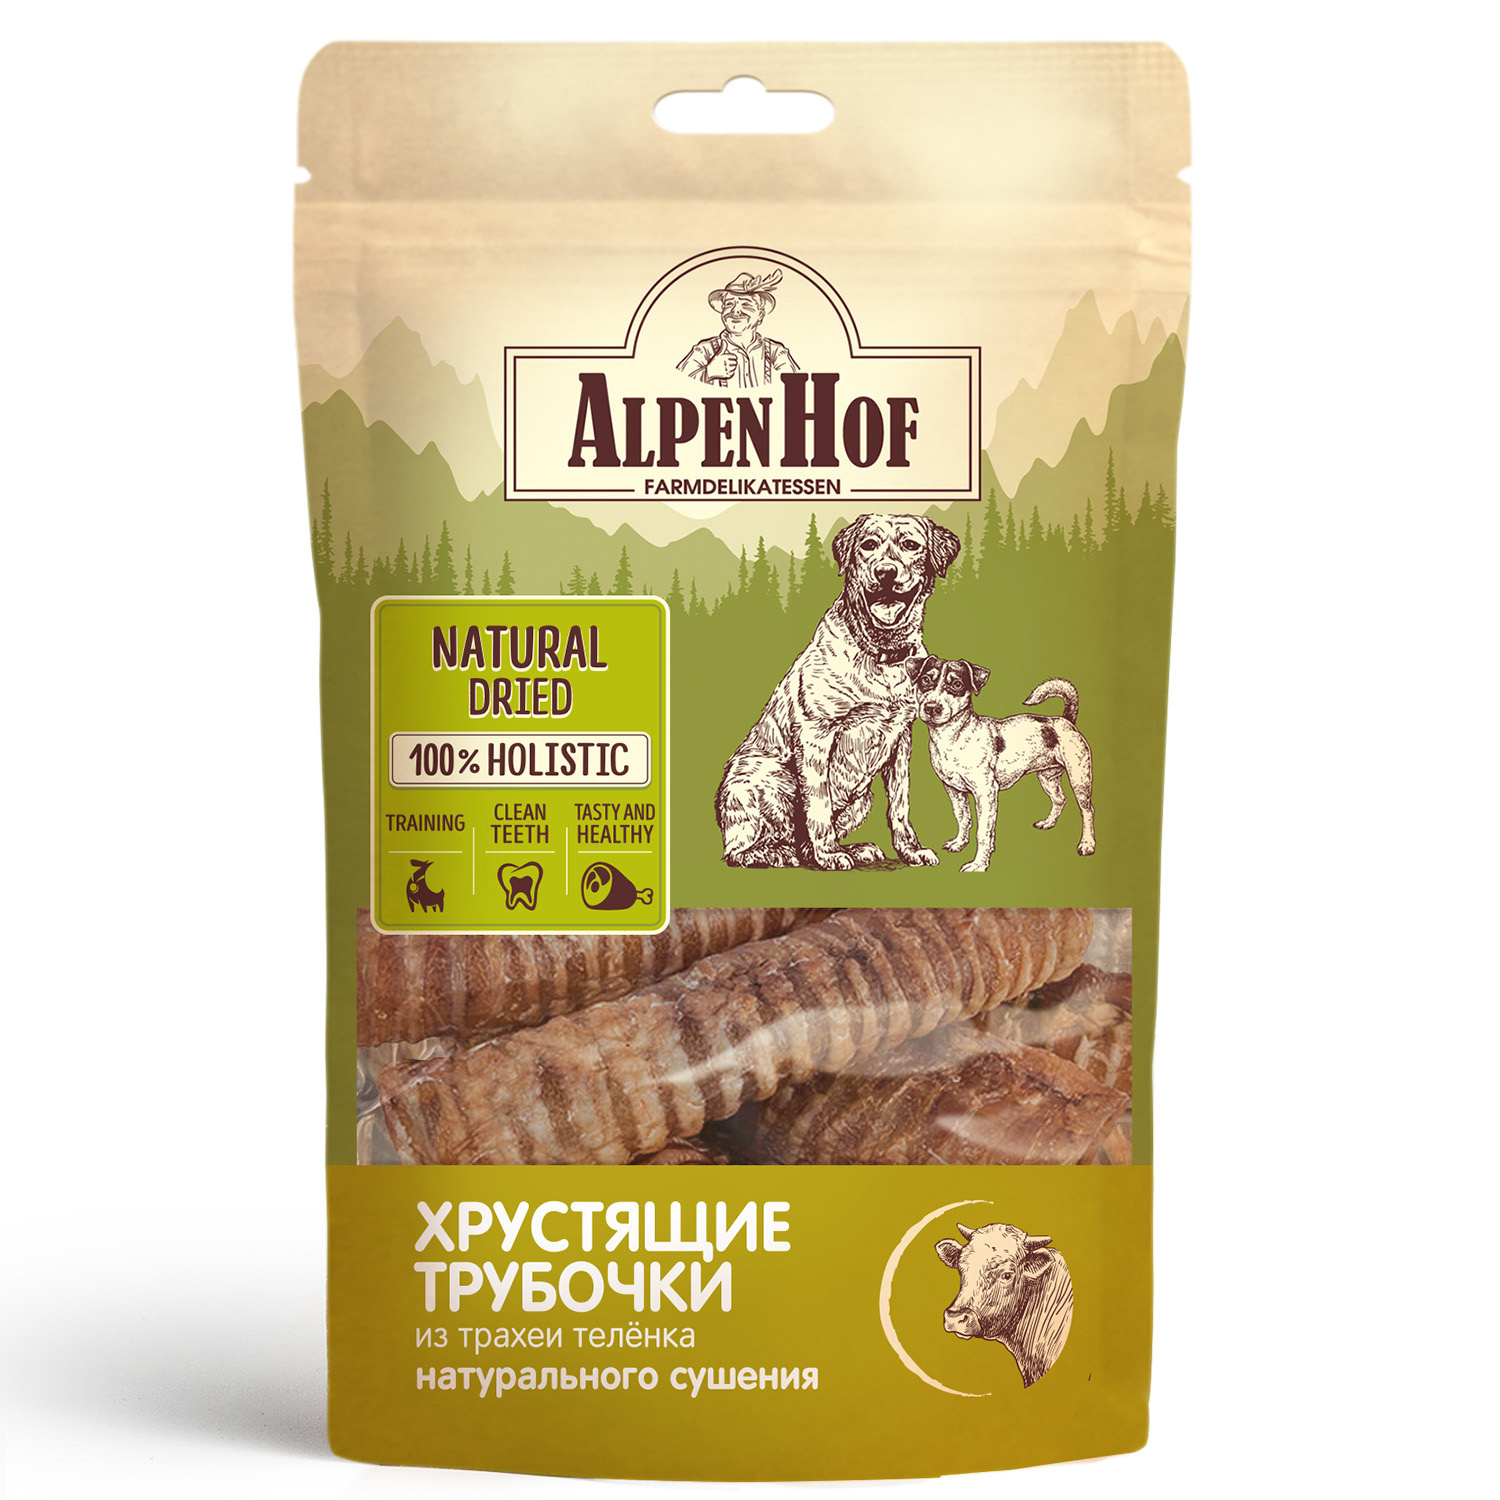 AlpenHof лакомство Хрустящие трубочки из трахеи теленка для собак (64 г)